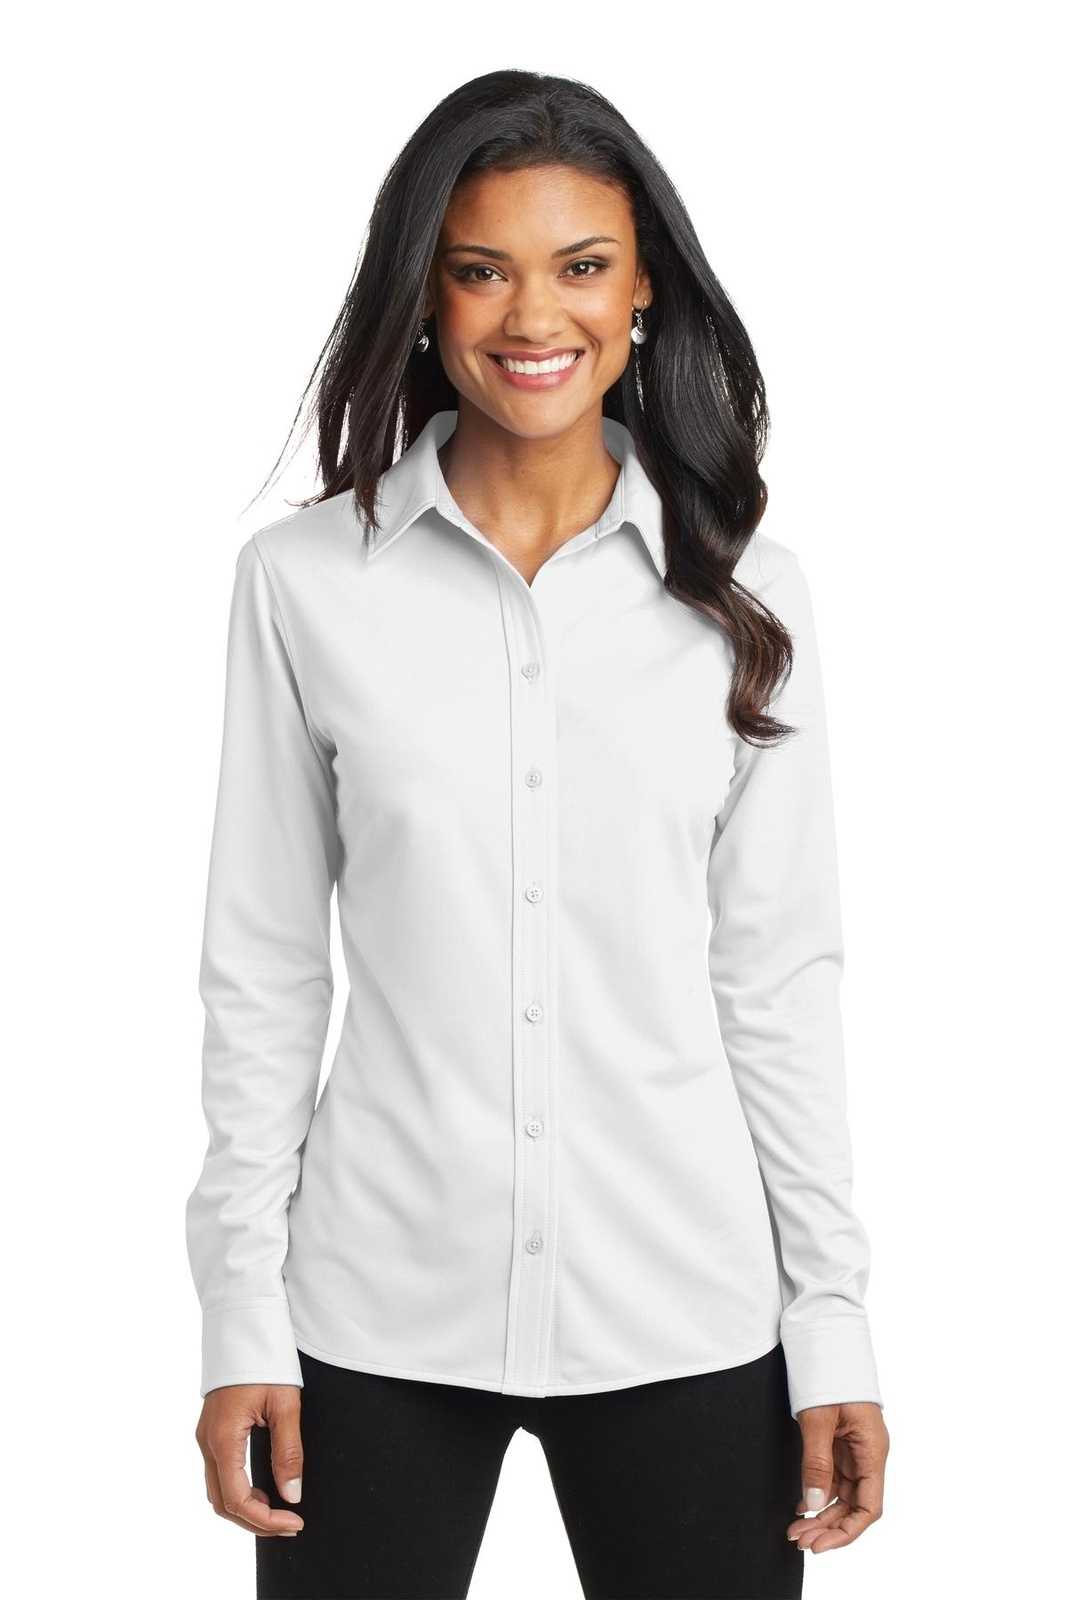 Port Authority L570 Ladies Dimension Knit Dress Shirt - White - HIT a Double - 1